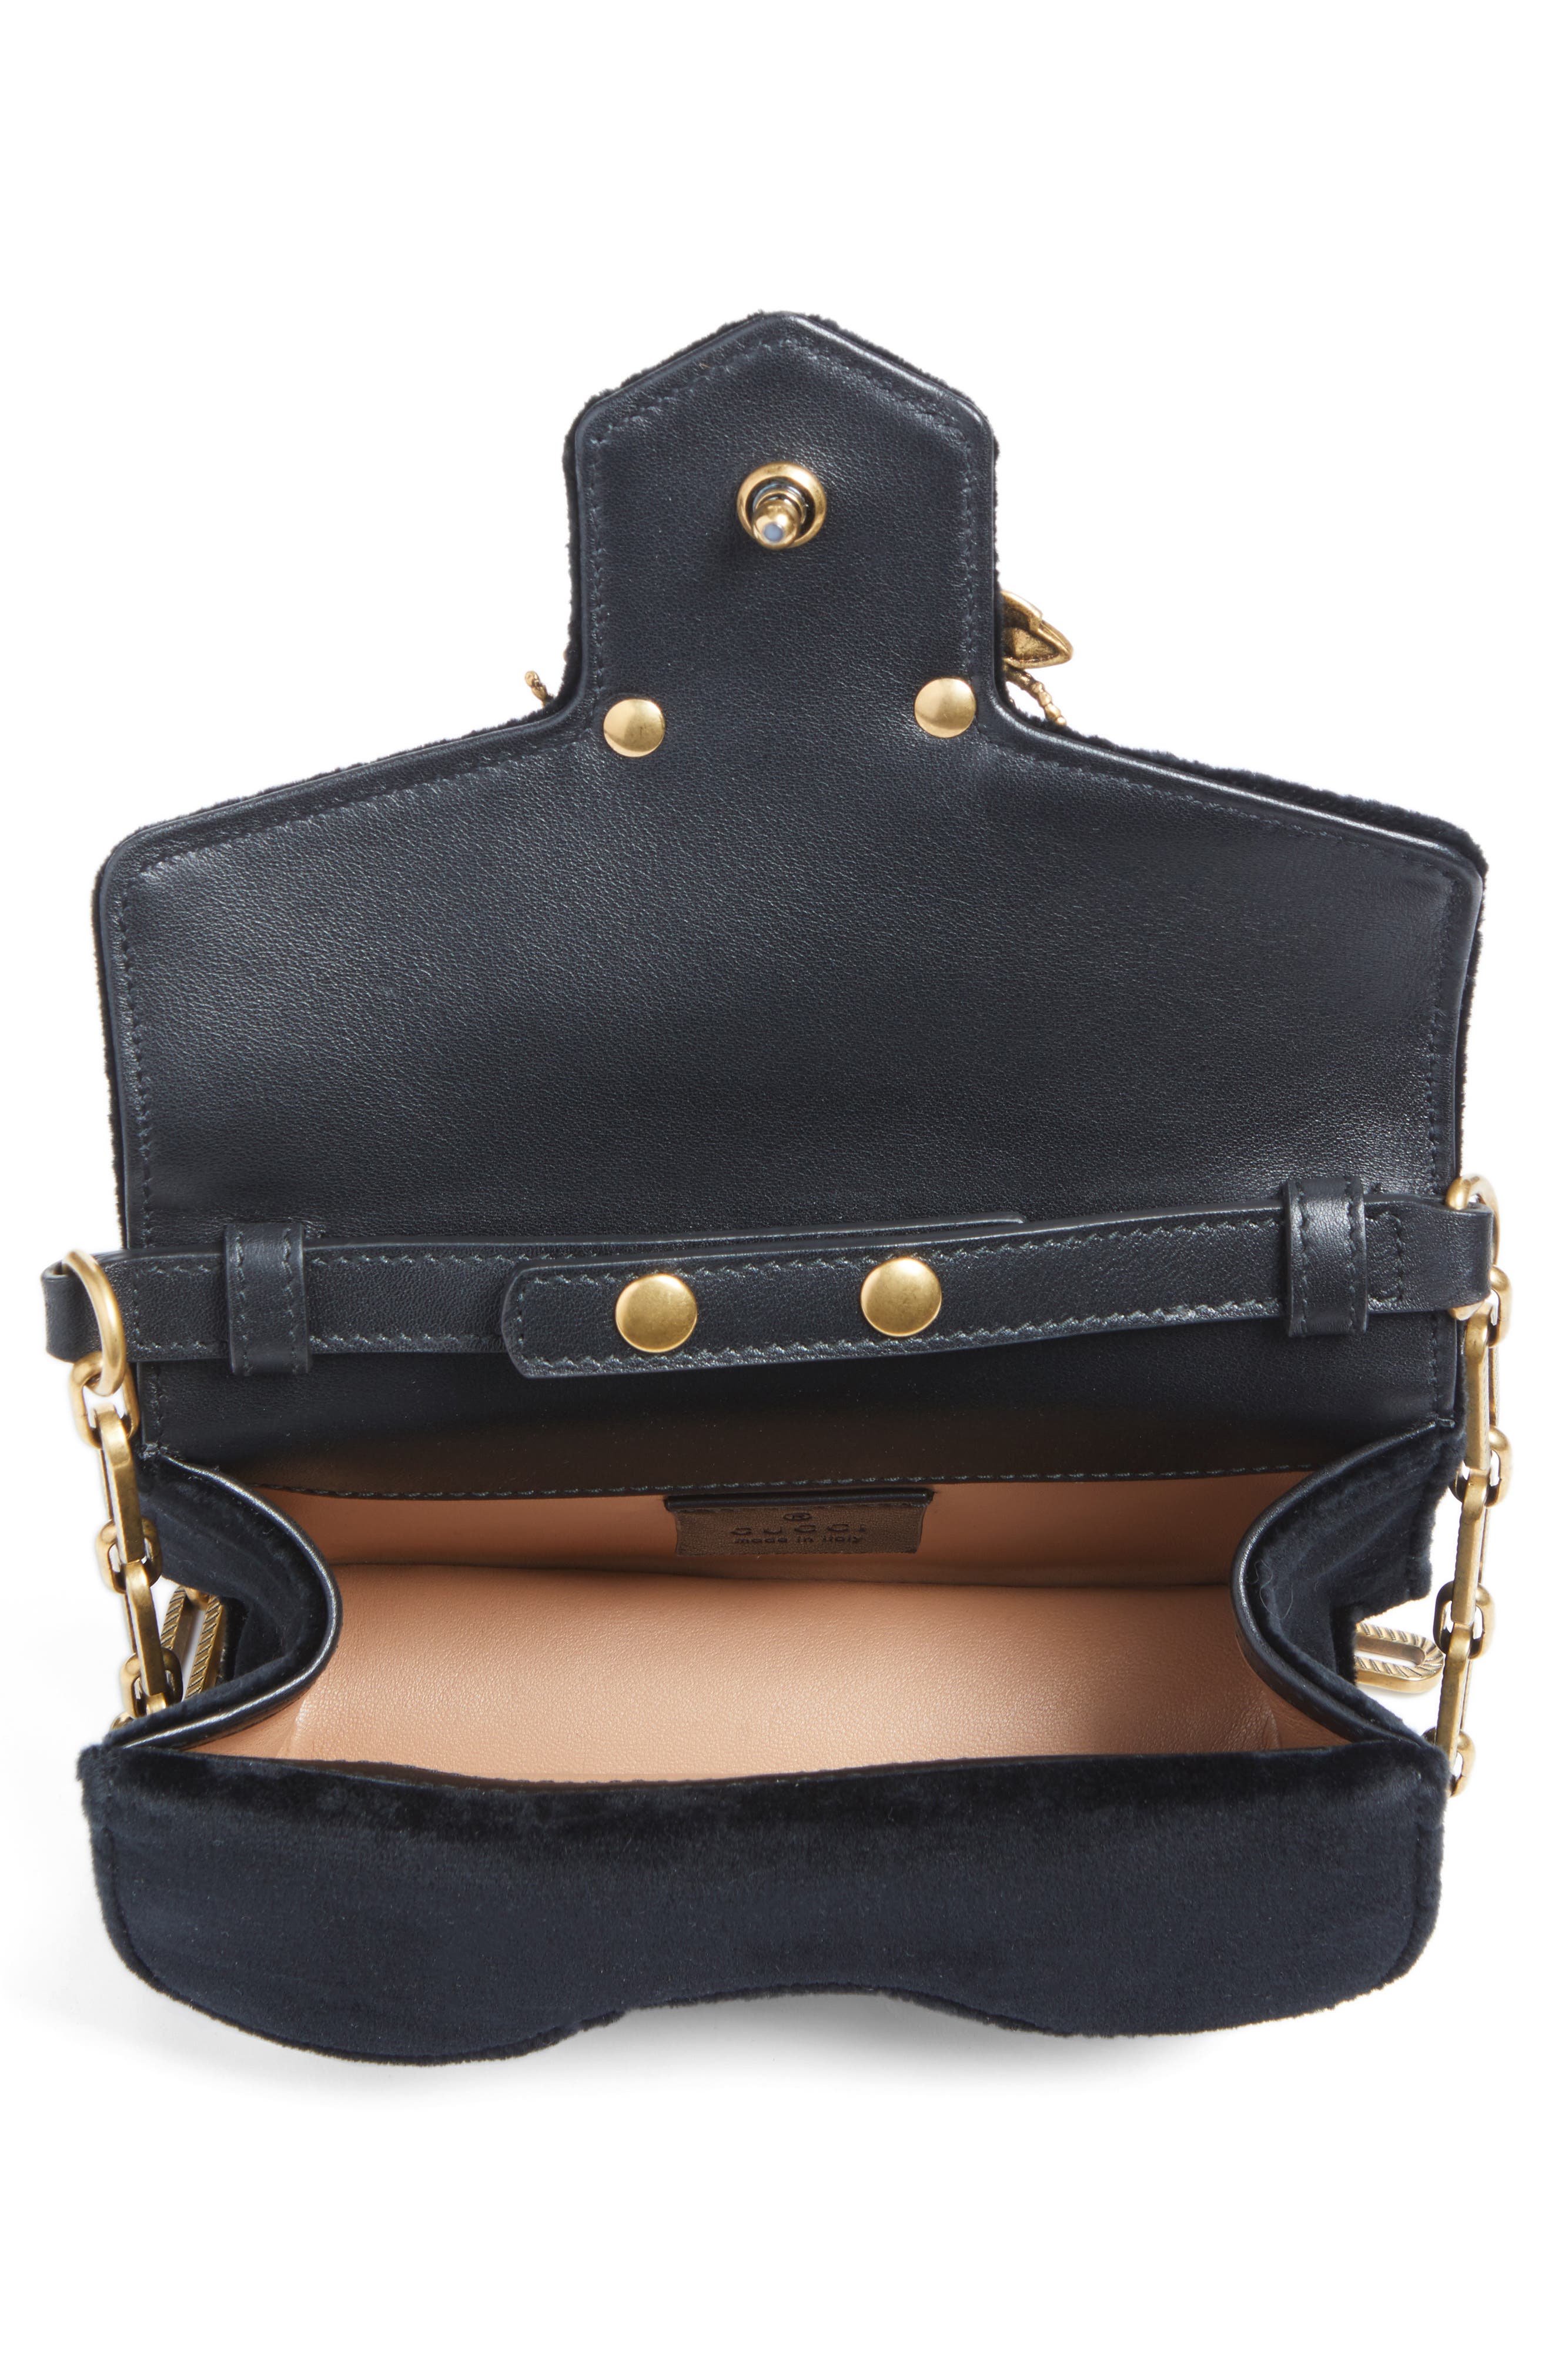 GUCCI Velvet Embellished Shoulder Bag, Black, One Size | ModeSens